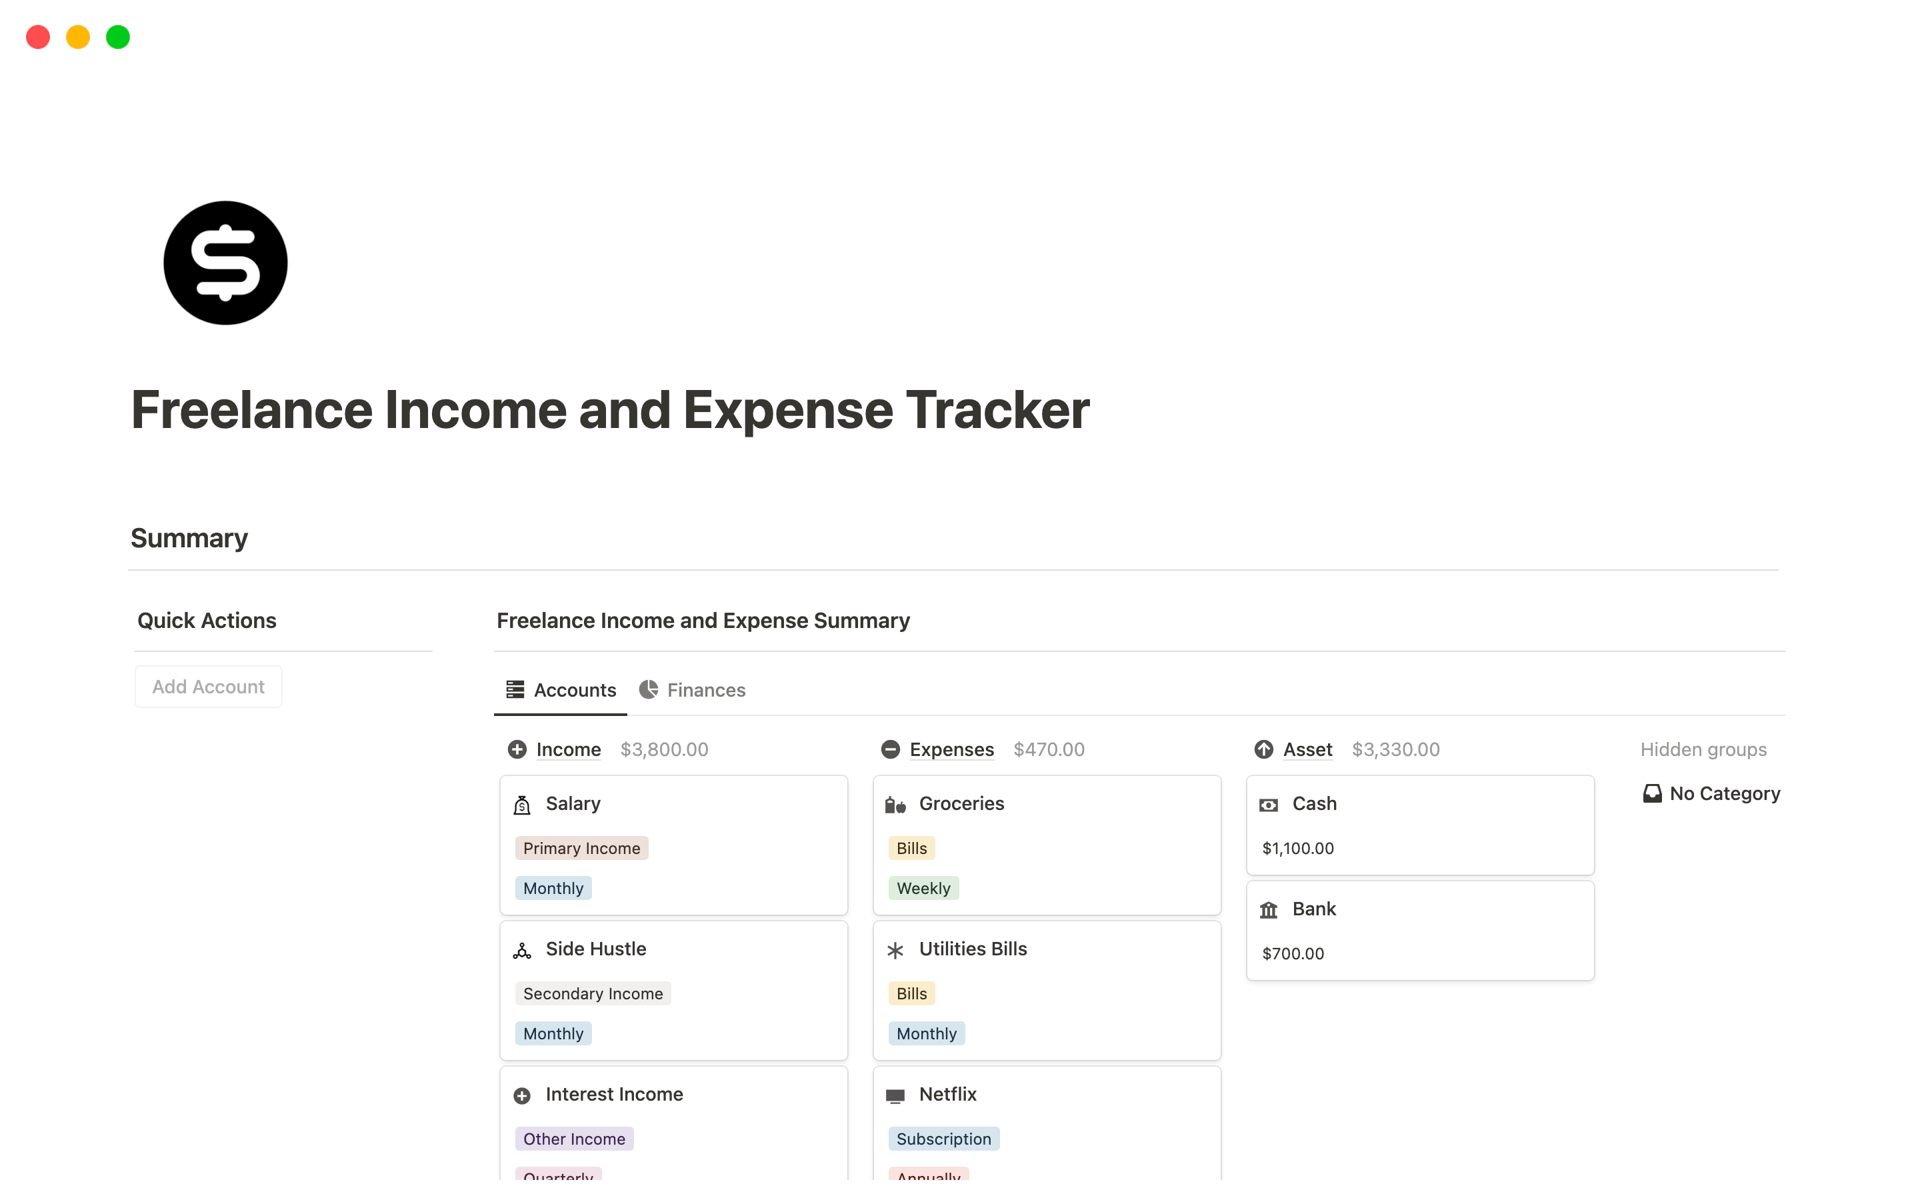 Uma prévia do modelo para Freelance Income and Expense Tracker